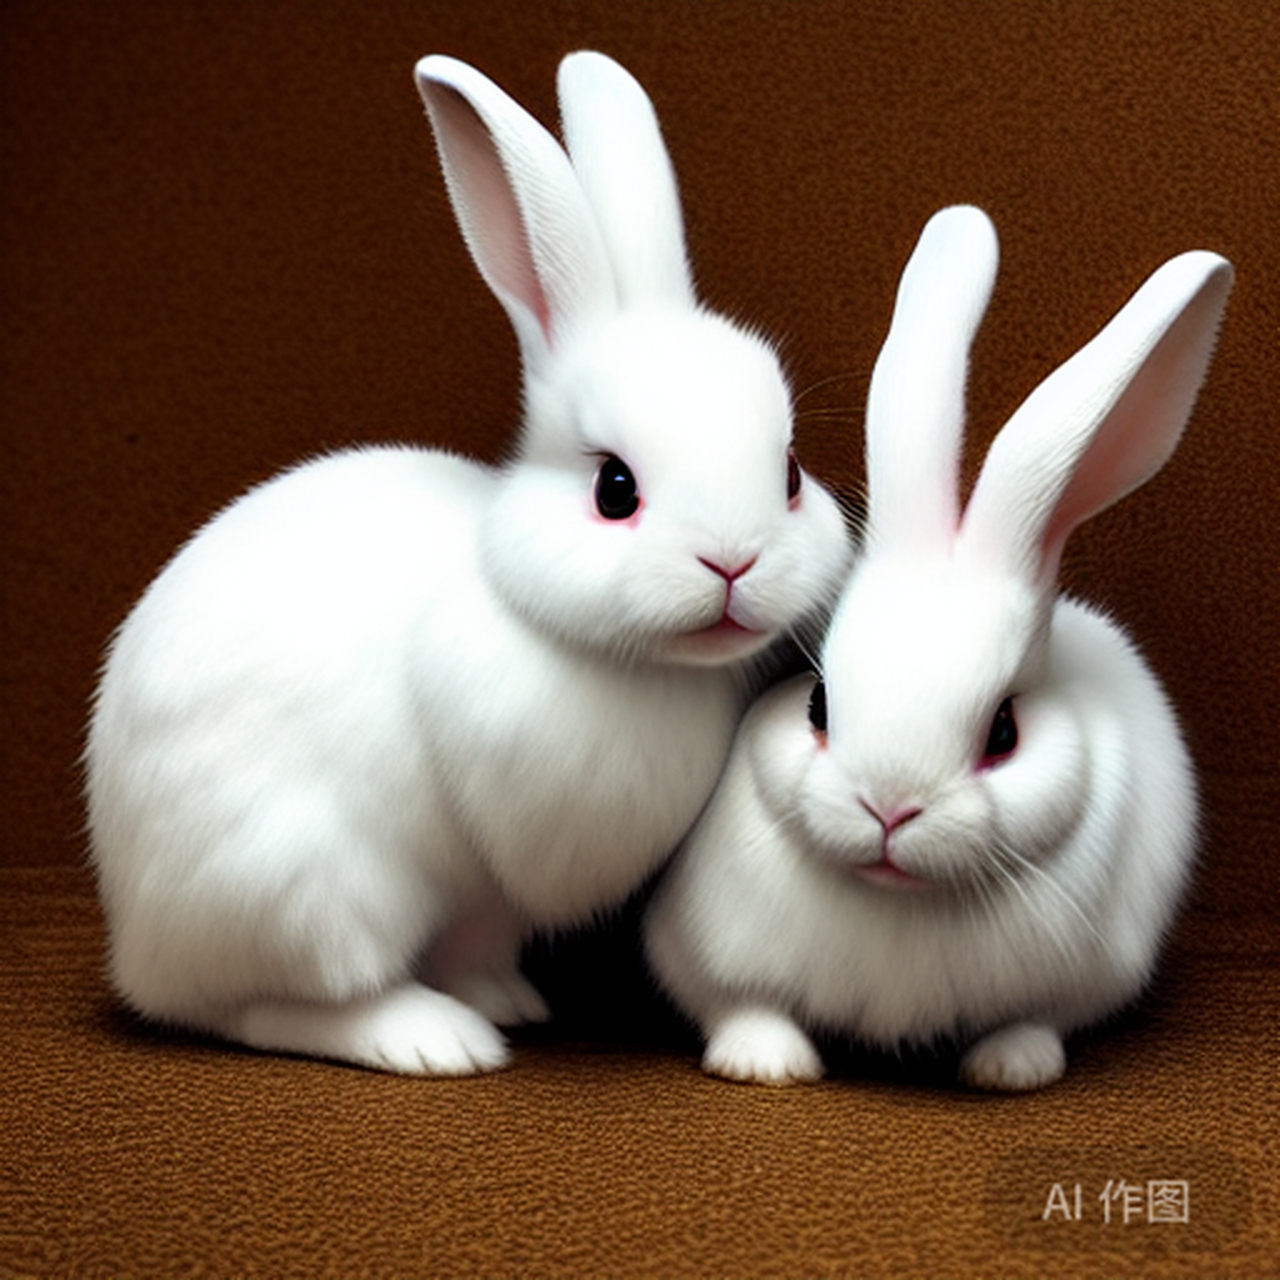 小兔子是一种乖巧的小动物,可爱,驯良,很讨人喜欢